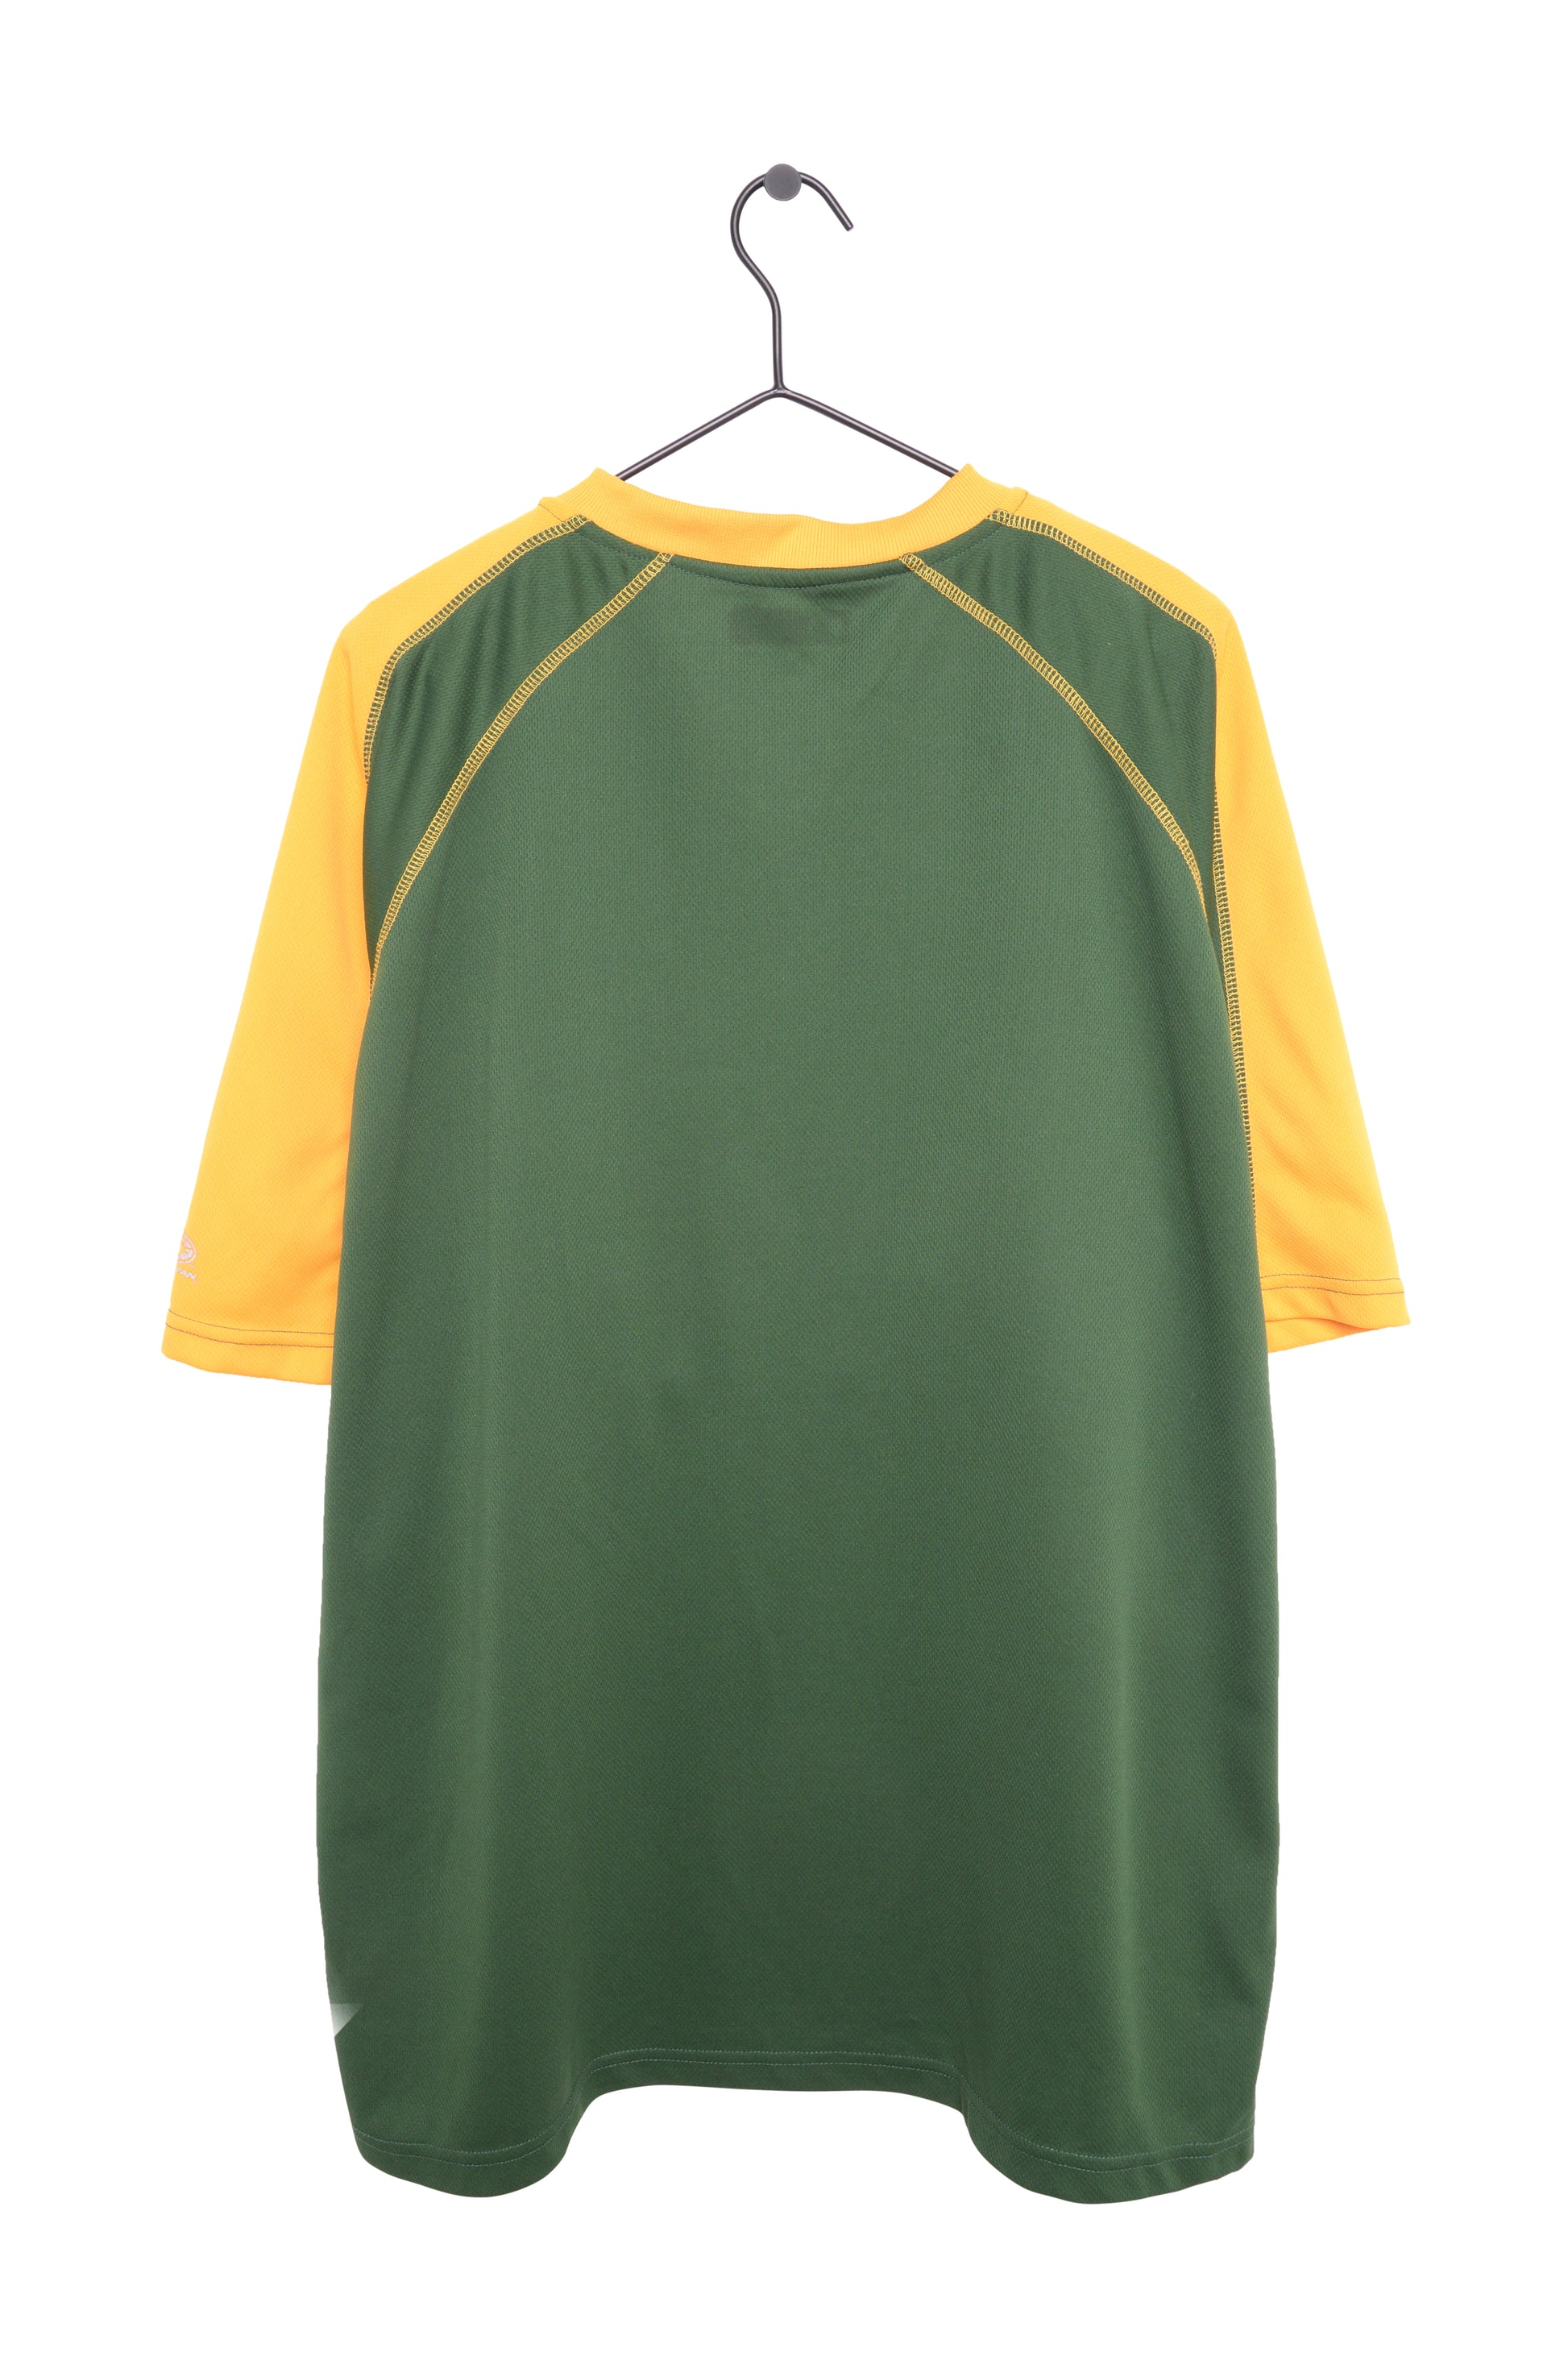 Vintage Oakland athletics jersey medium men. ⚾️  Vintage jerseys, Oakland  athletics, Clothes design